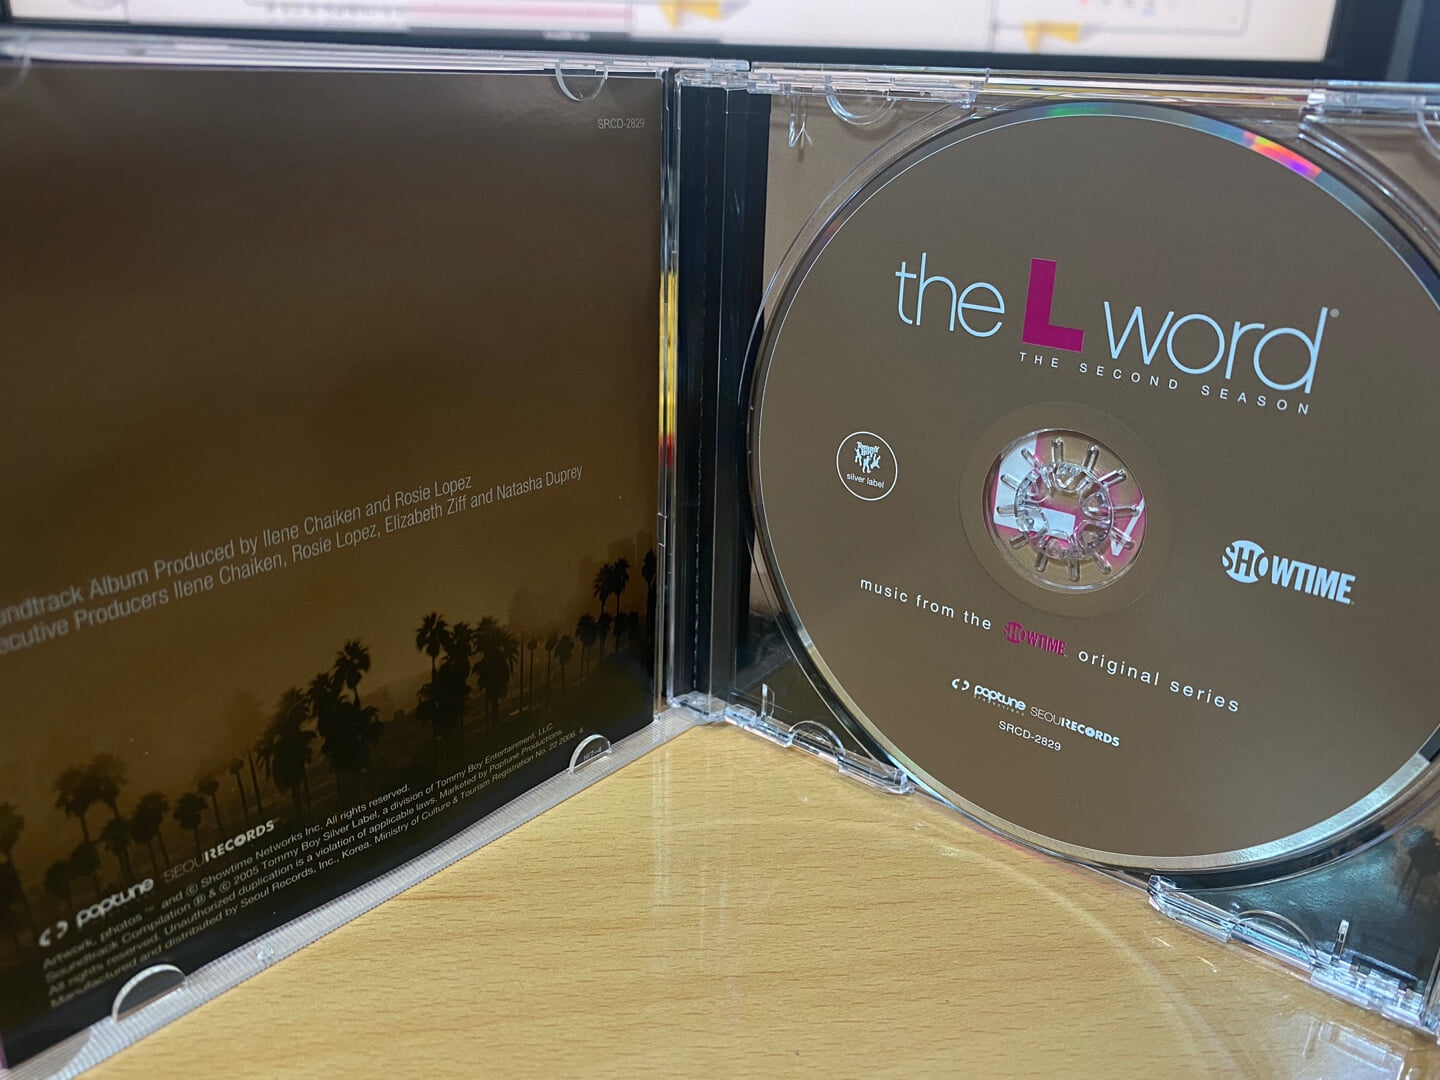 더 L 워드 - The L Word The Second Season OST 